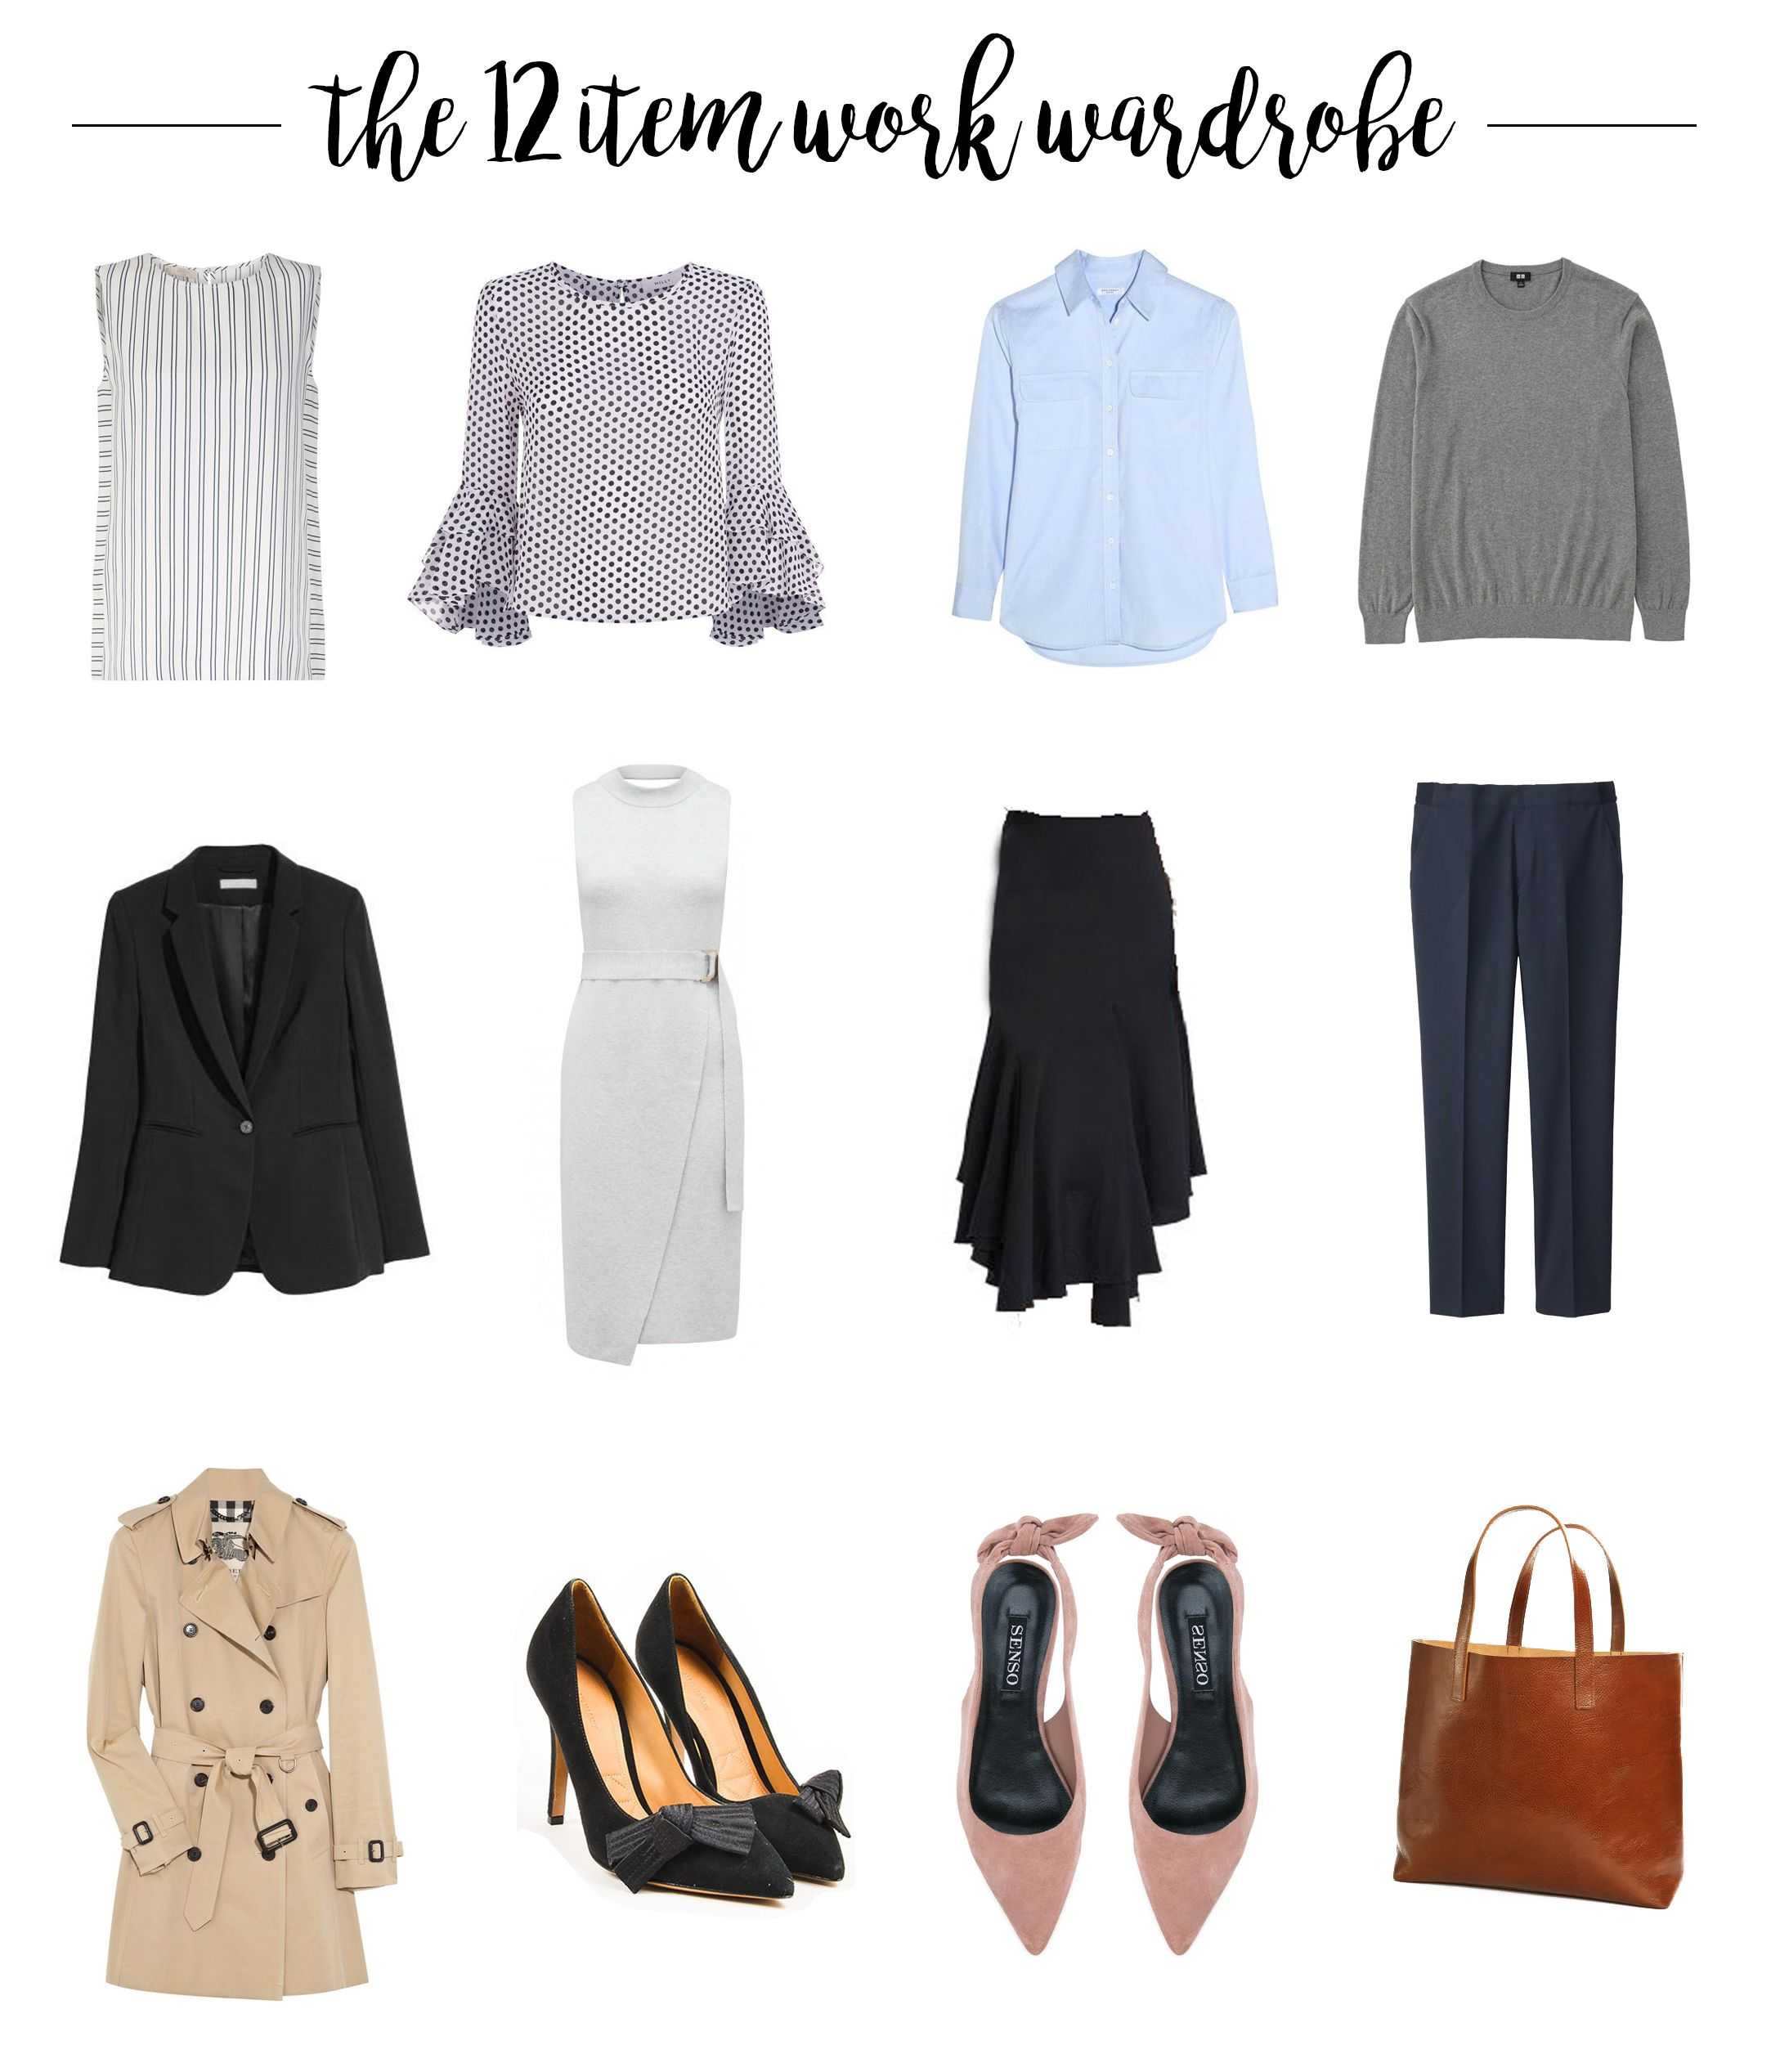 Верхняя одежда для женщин: особенности и разновидности, популярные бренды с фото